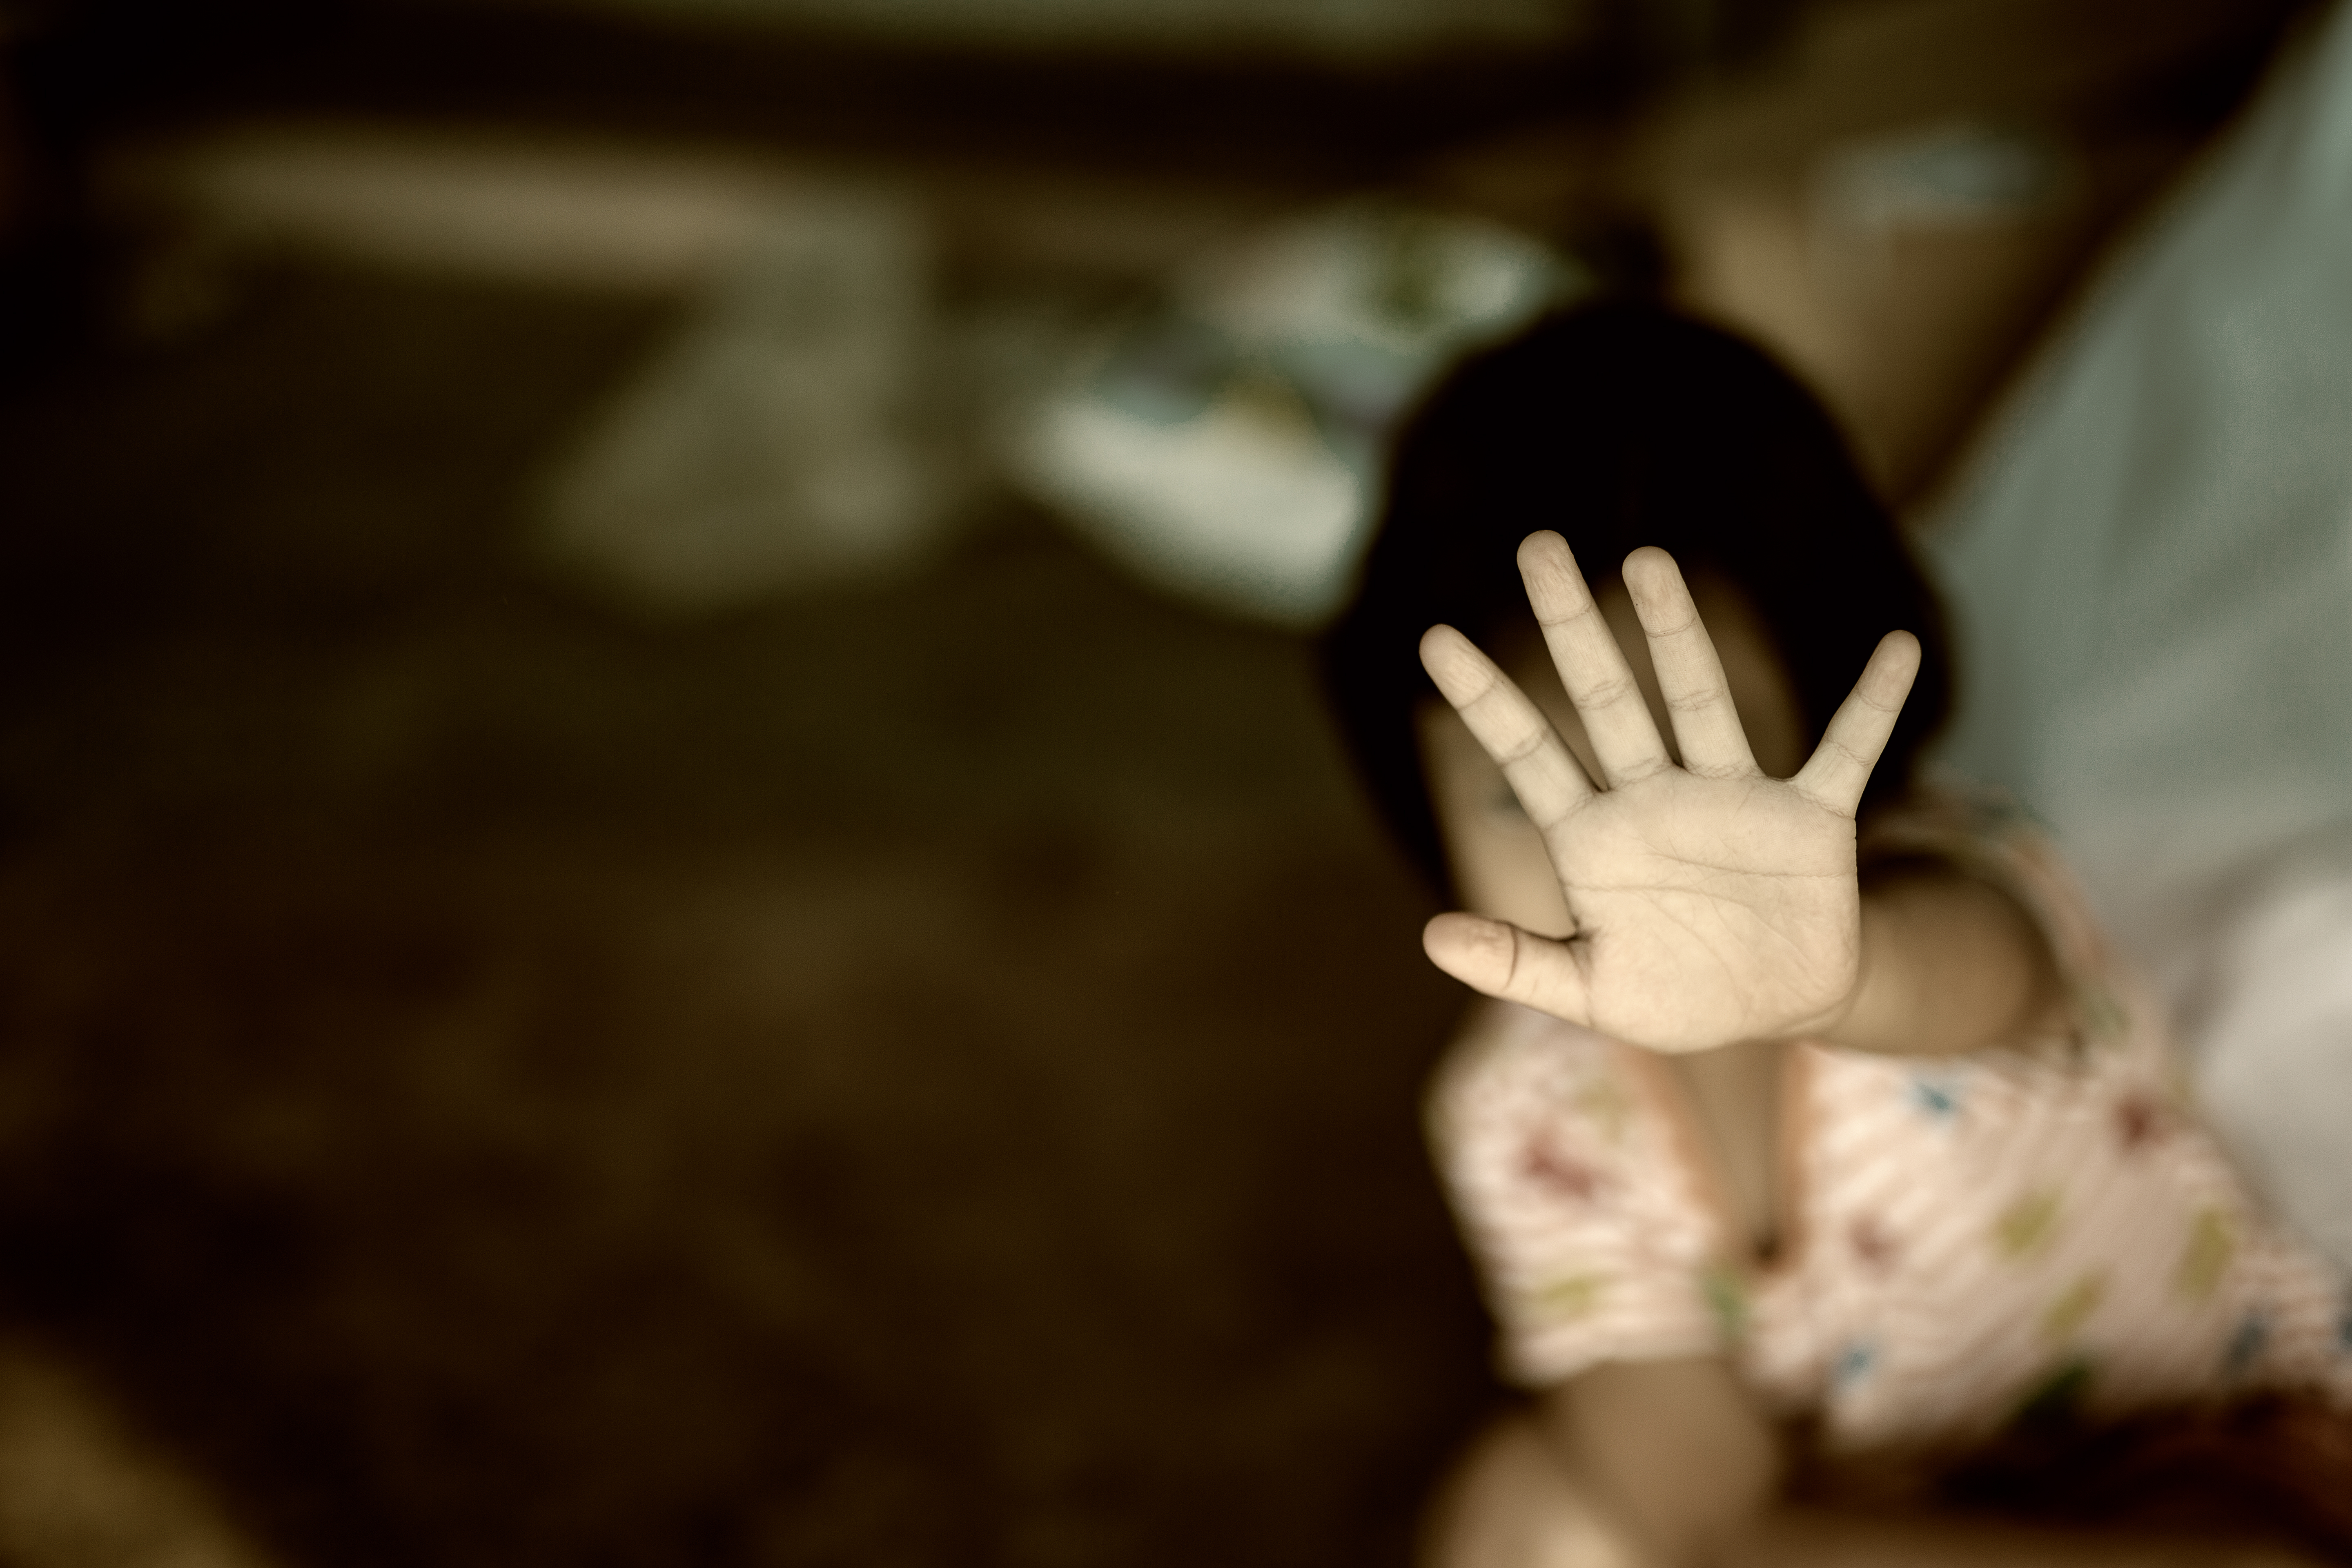 En el 2018, las agresiones y violaciones sexuales aumentaron contra las niñas entre 5 y 9 años, según reporte del Inacif. (Foto Prensa Libre: Servicios)